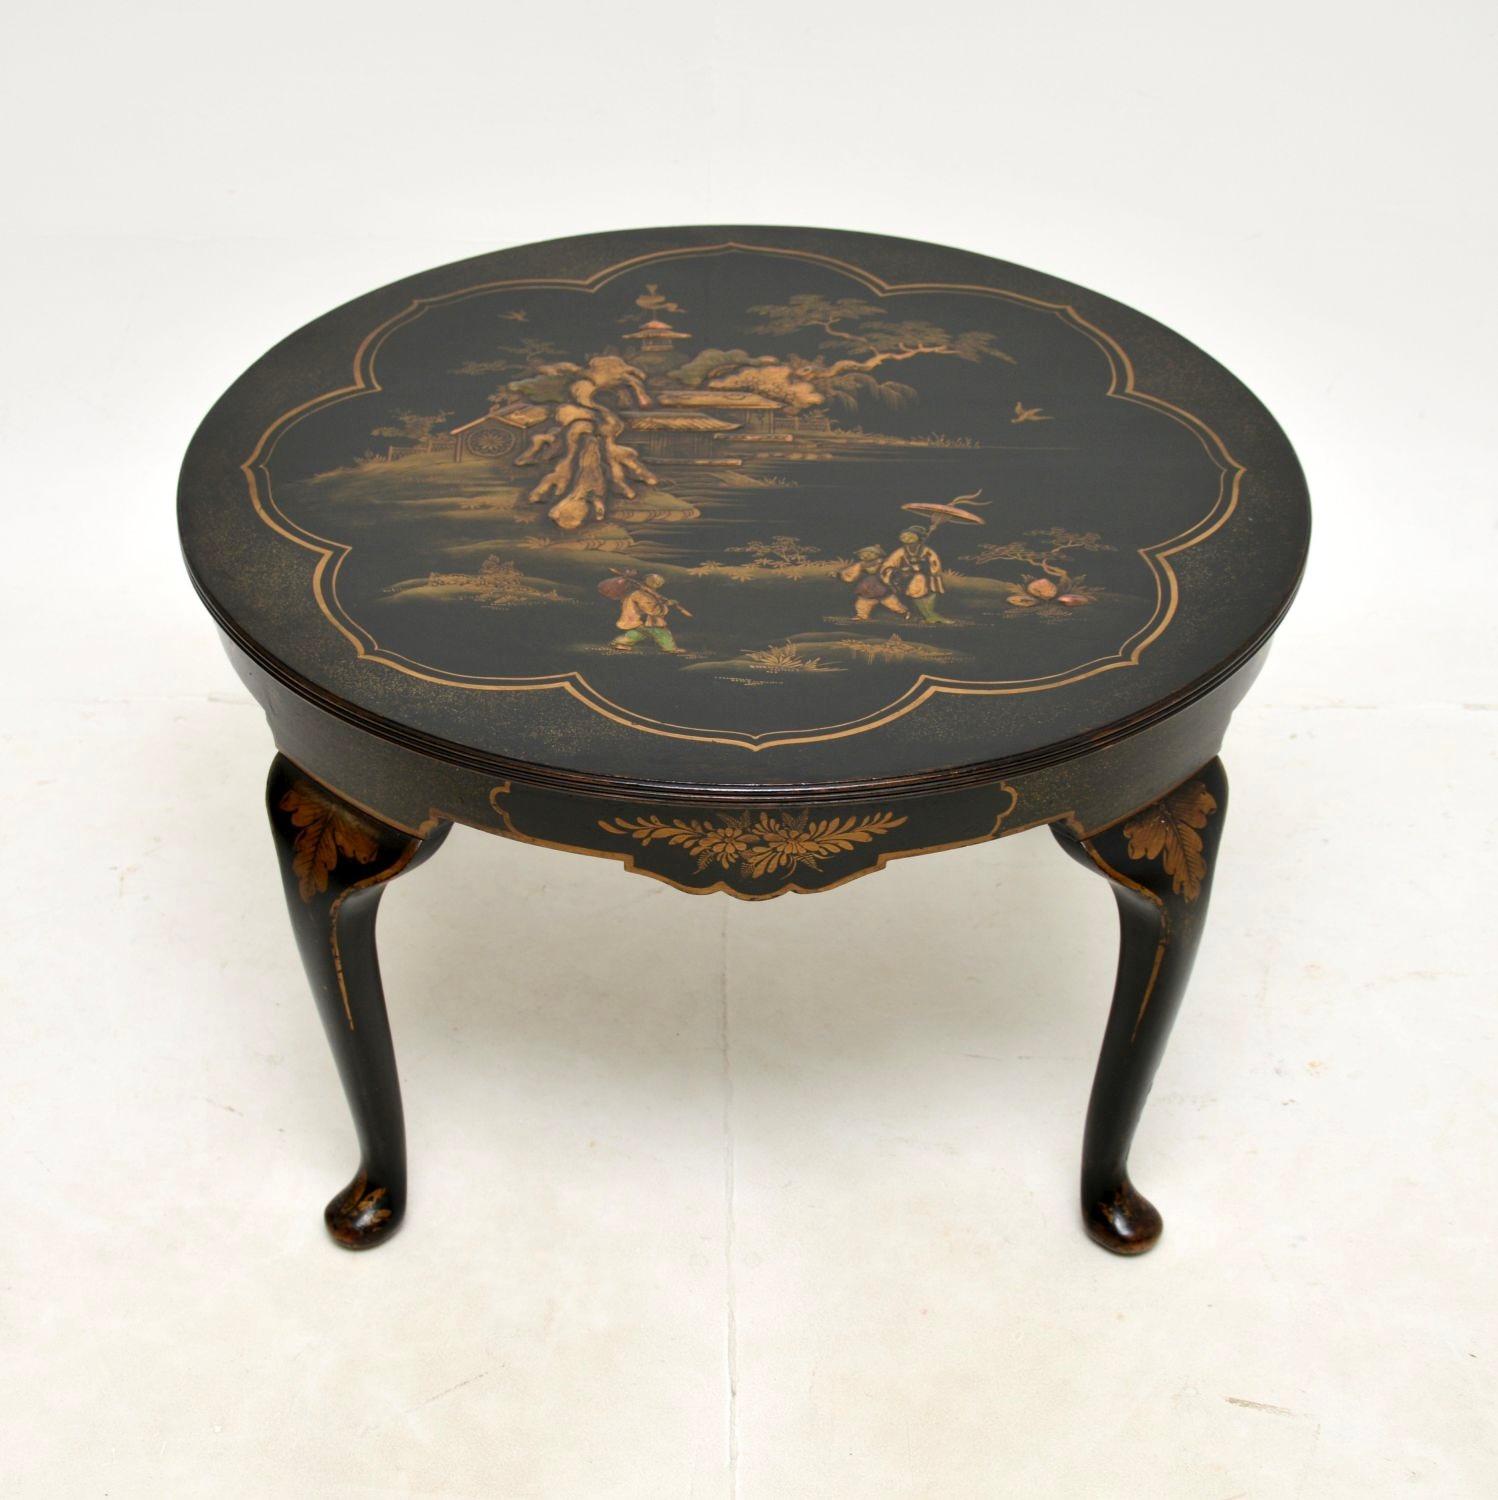 Une table basse ancienne en chinoiserie laquée absolument stupéfiante. Il a été fabriqué en Angleterre, il date des années 1920 environ.

Il est d'une très grande qualité, avec de magnifiques décorations laquées dans le style oriental classique. Il